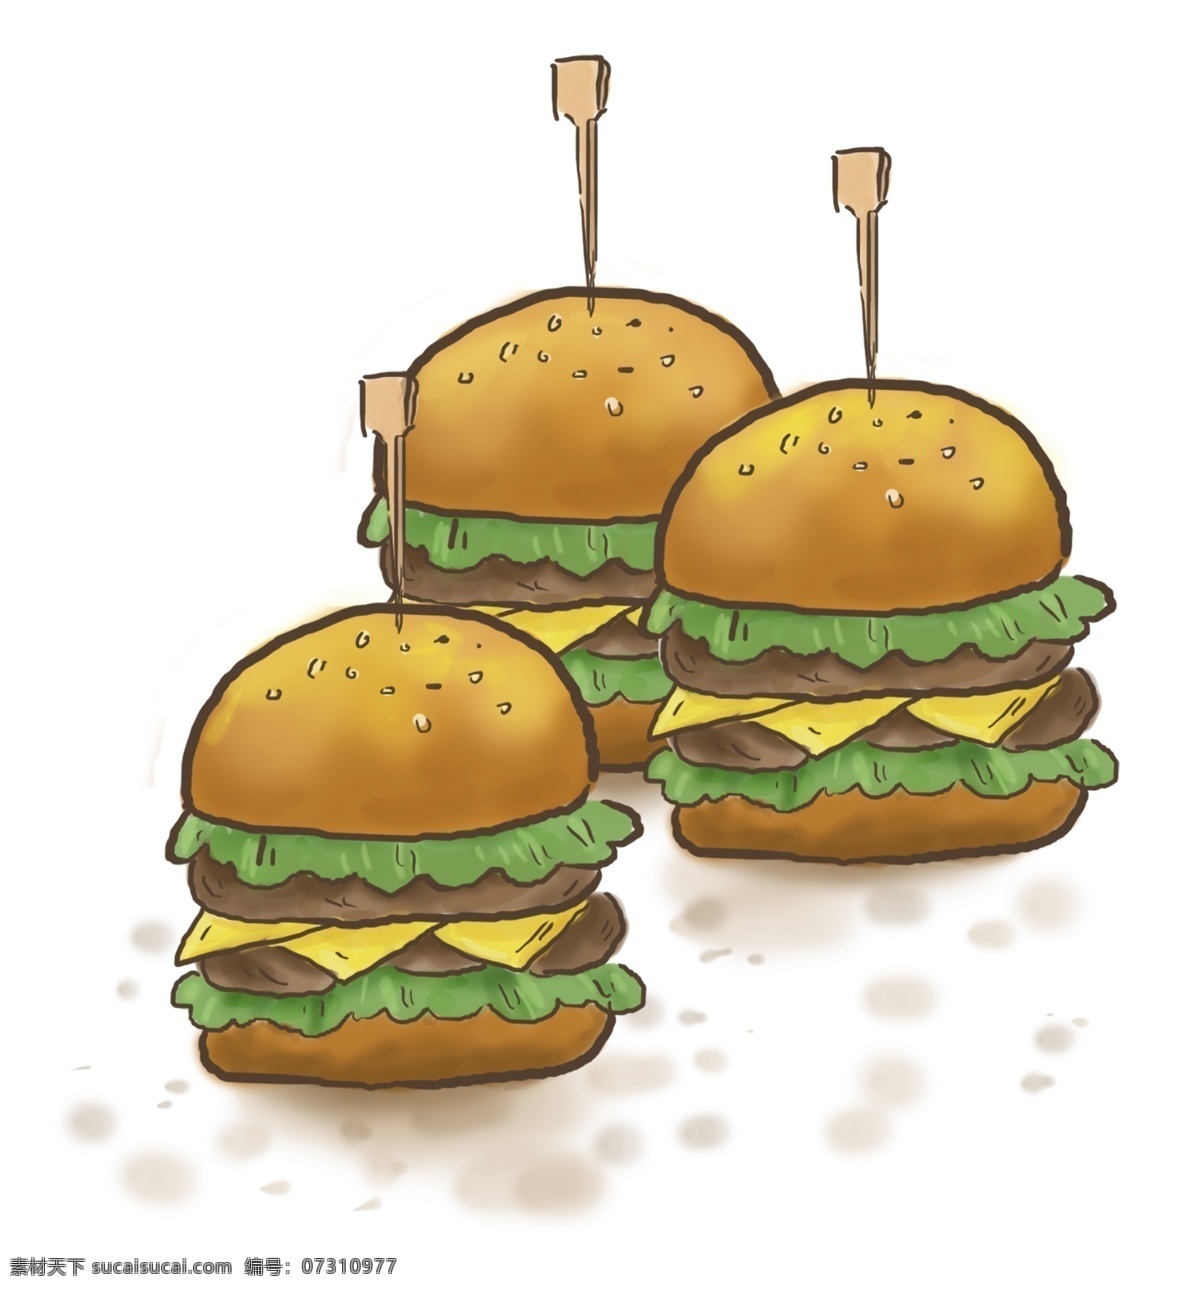 食物 美式 快餐 汉堡 汉堡酱 绿色生菜 洋快餐 肉块 食材 汉堡包 美餐 美食餐饮 汉堡制作 生菜